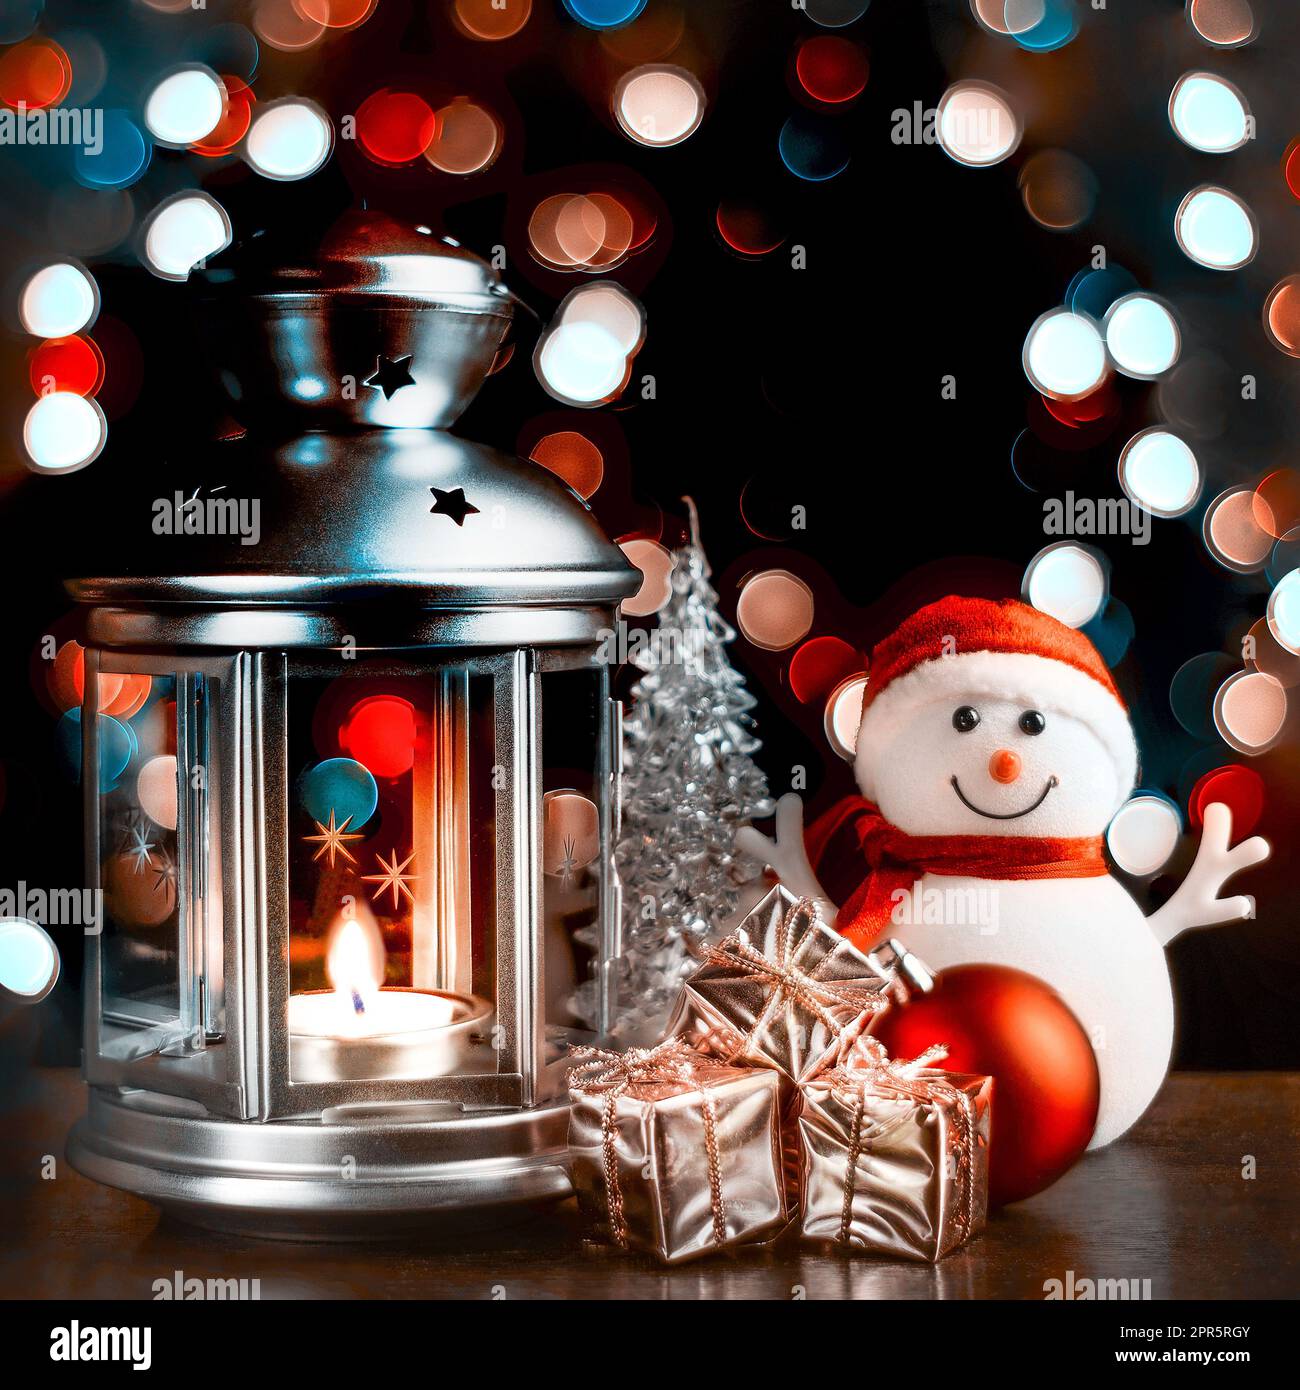 Cartolina di Natale: Pupazzo di neve, lanterna con candele, scatole luminose e lucenti con regali e luci sfocate sullo sfondo. Foto Stock